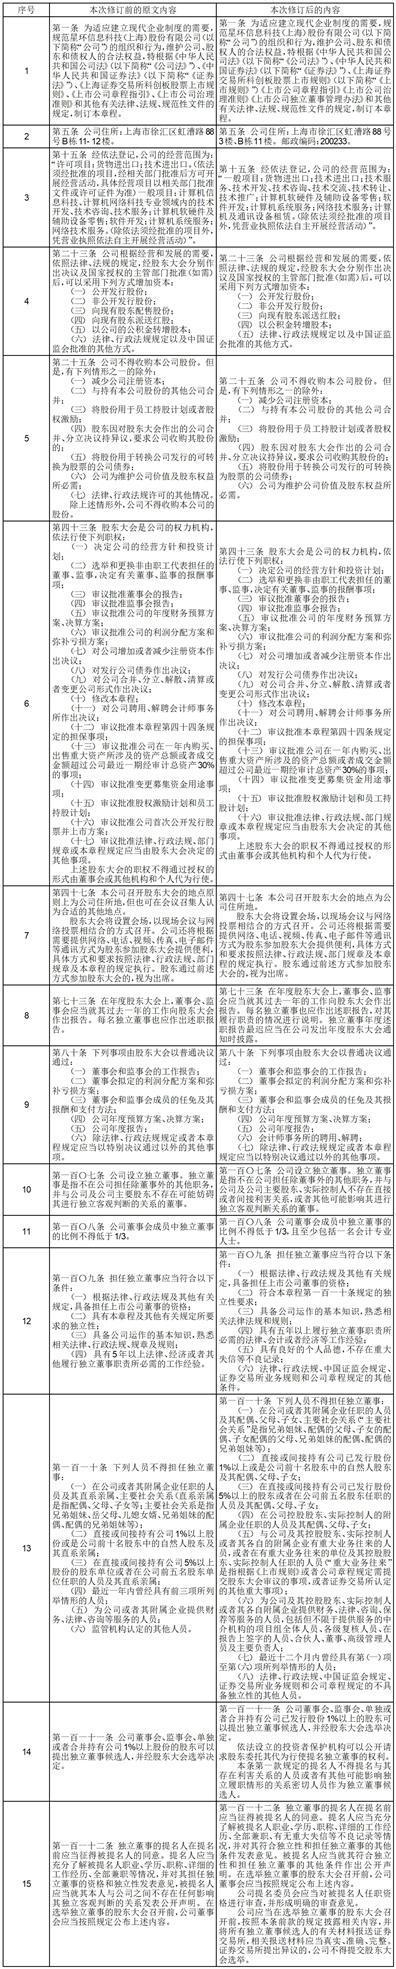 星环信息科技（上海）股份有限公司关于修订《公司章程》并办理工商备案登记、修订及制定公司部分内部管理制度的公告